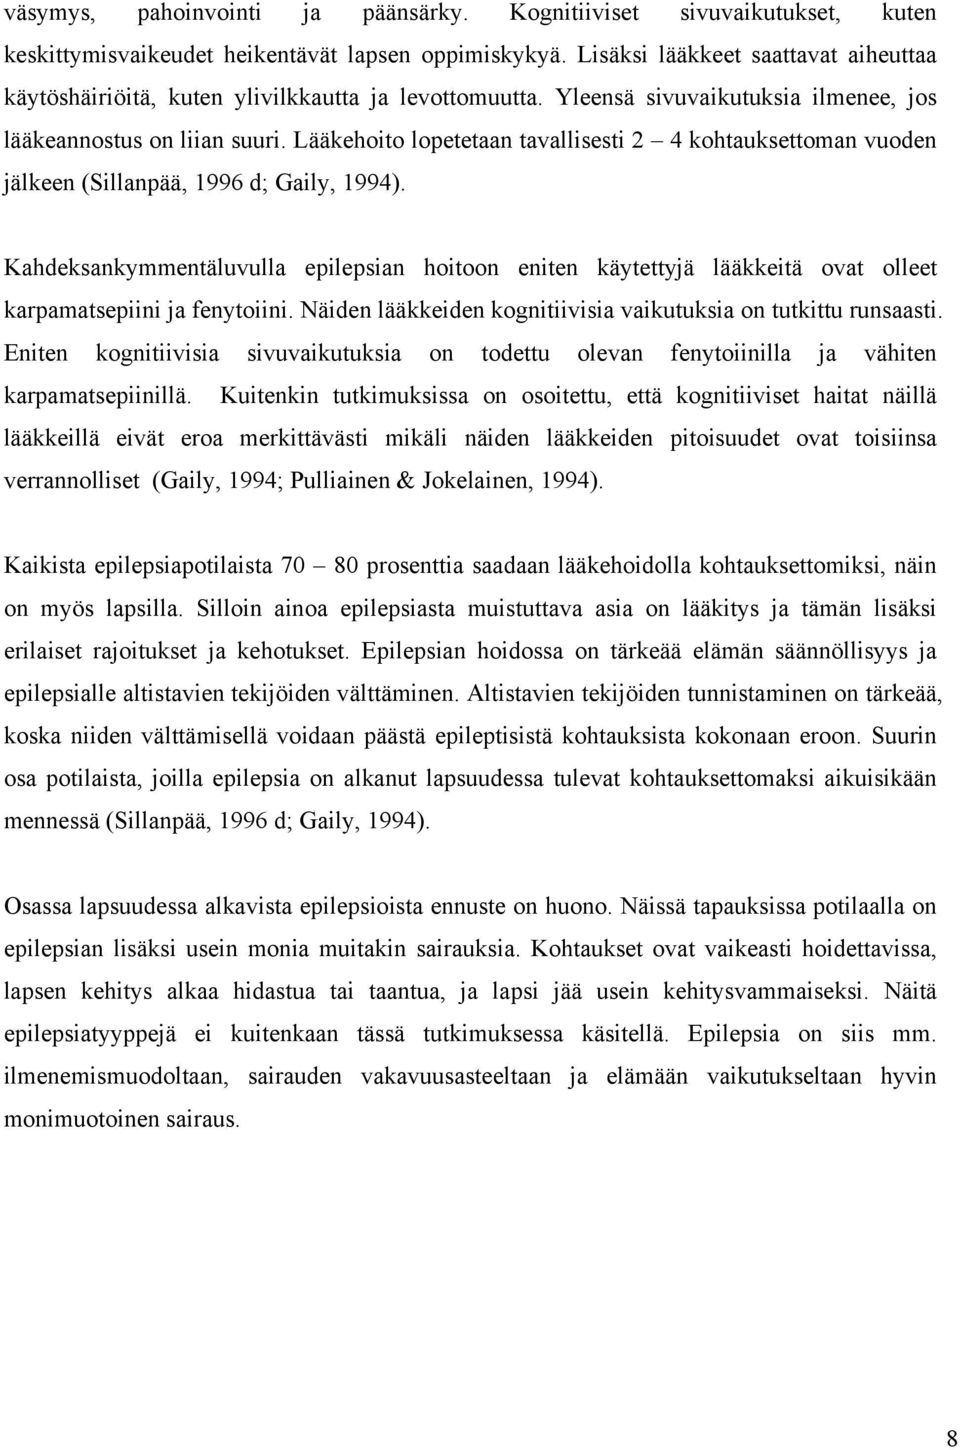 Lääkehoito lopetetaan tavallisesti 2 4 kohtauksettoman vuoden jälkeen (Sillanpää, 1996 d; Gaily, 1994).